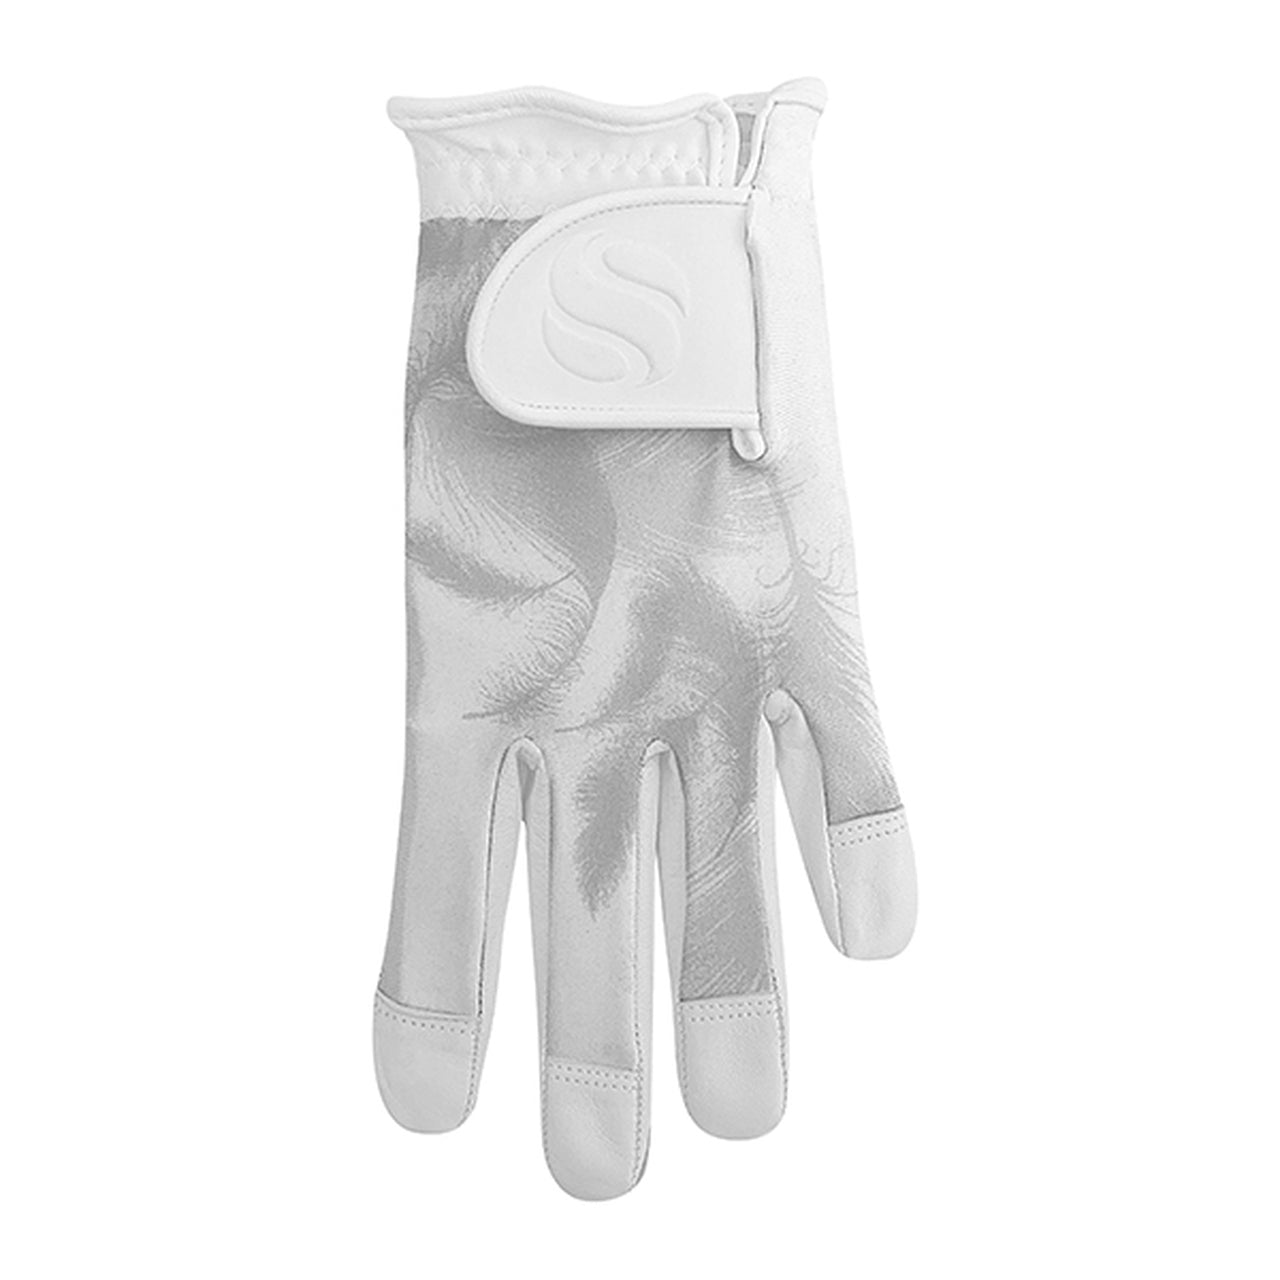 Comfort Stretch Glove with Cabretta Palm